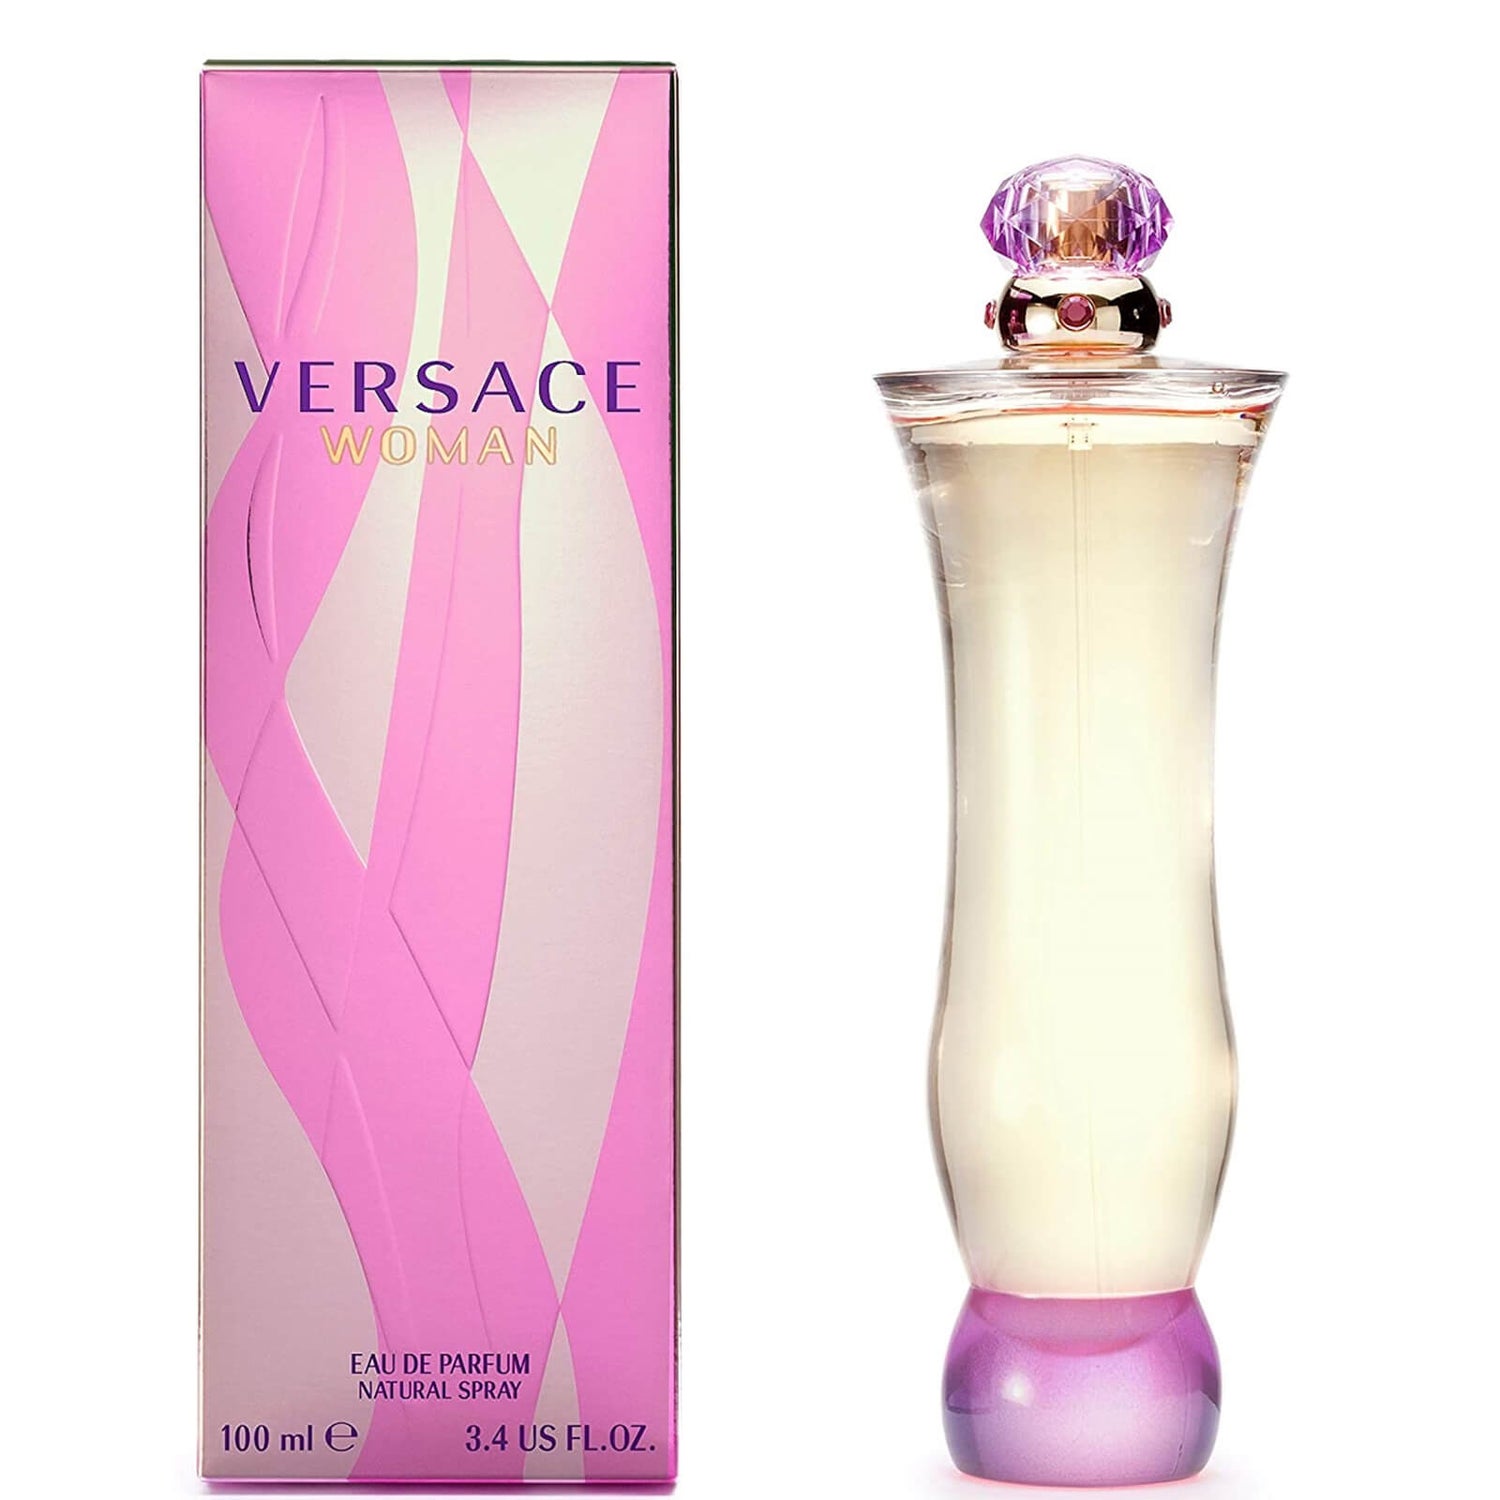 Versace Woman Eau de Parfum 100ml -